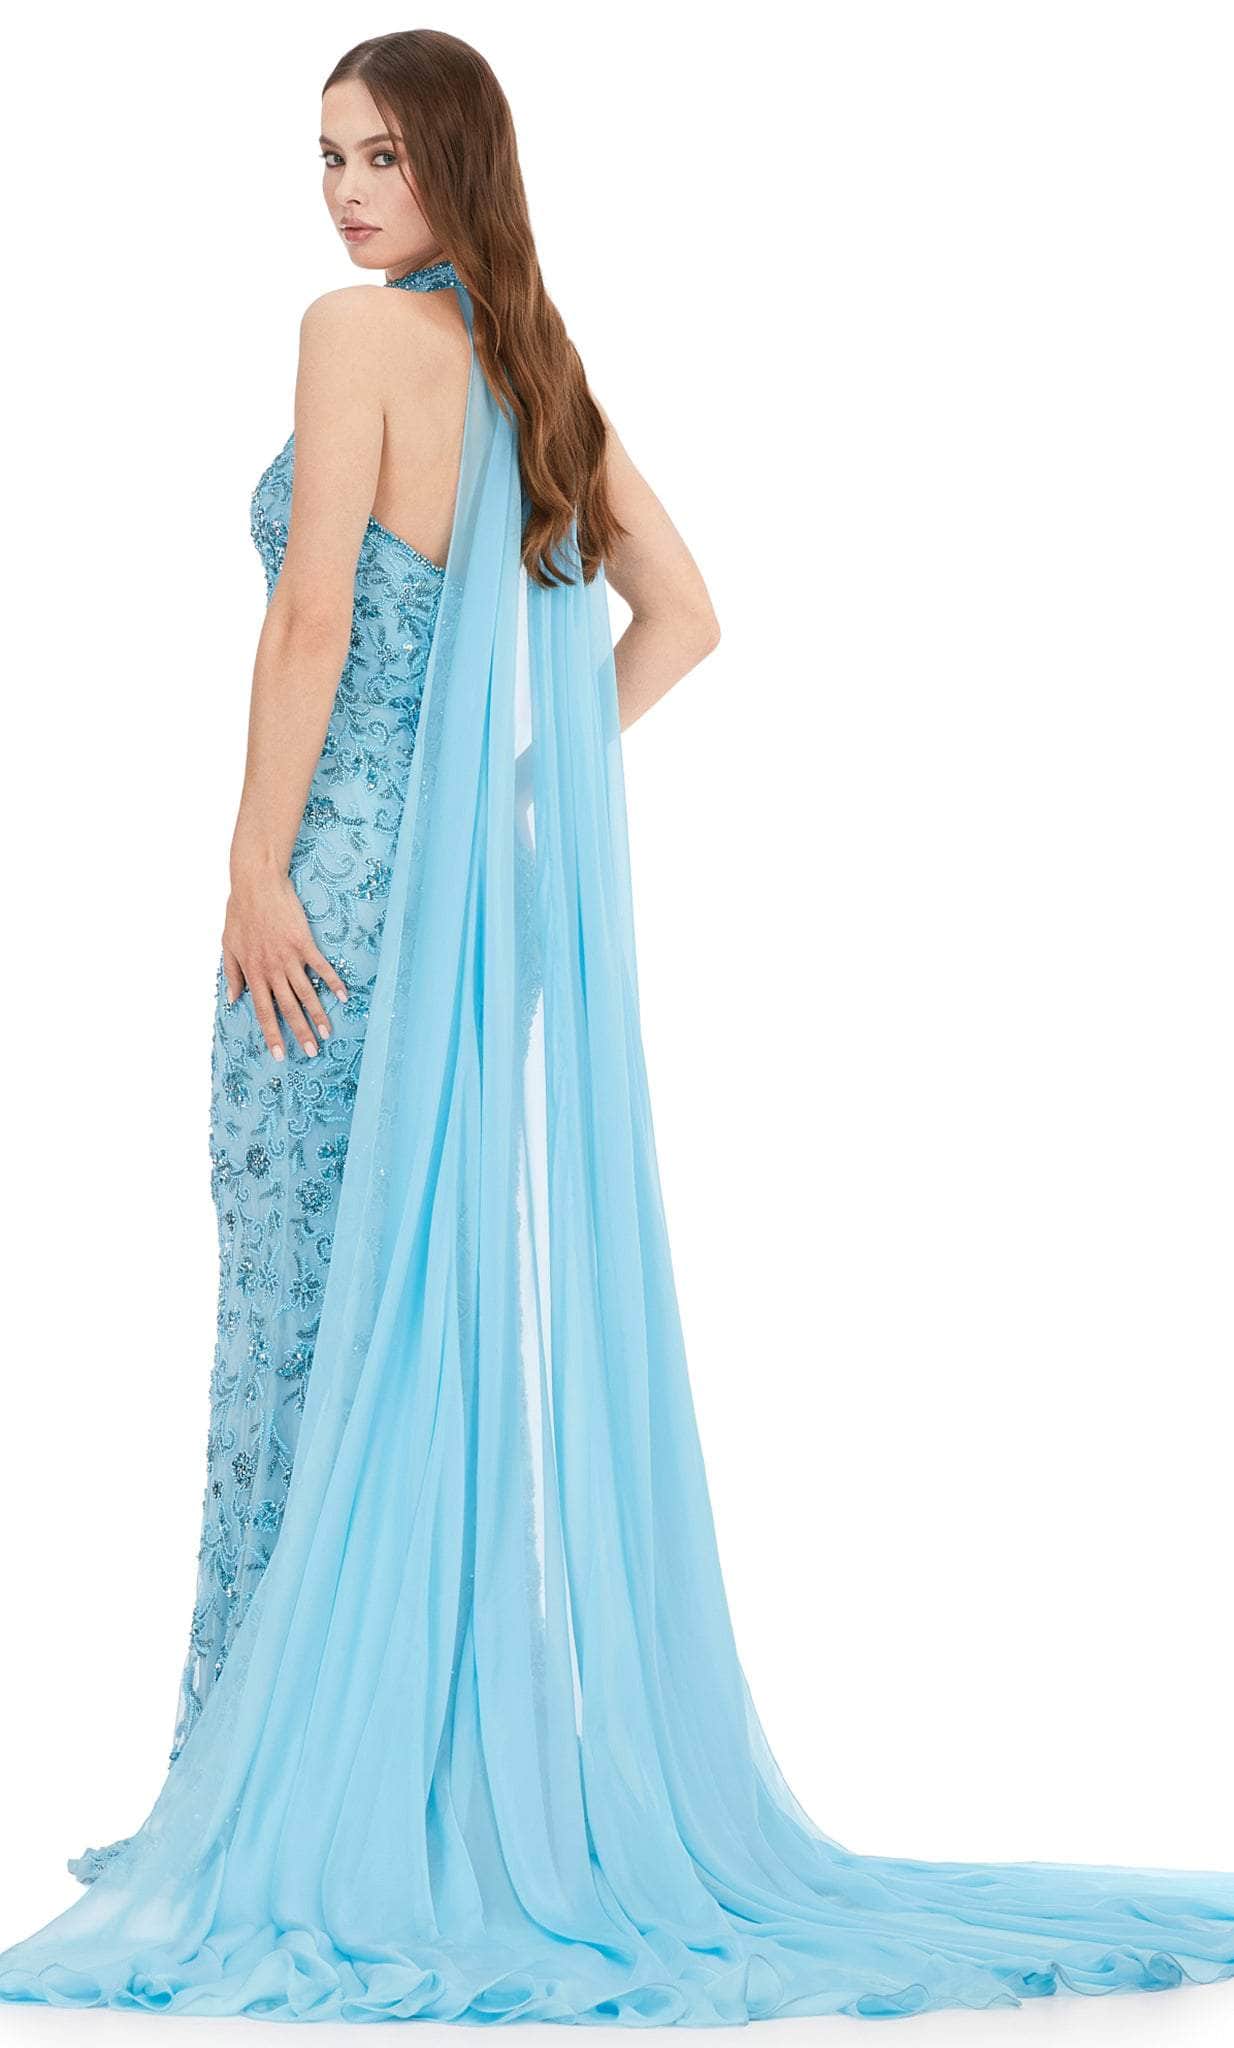 ashley lauren 11404 - beaded gown